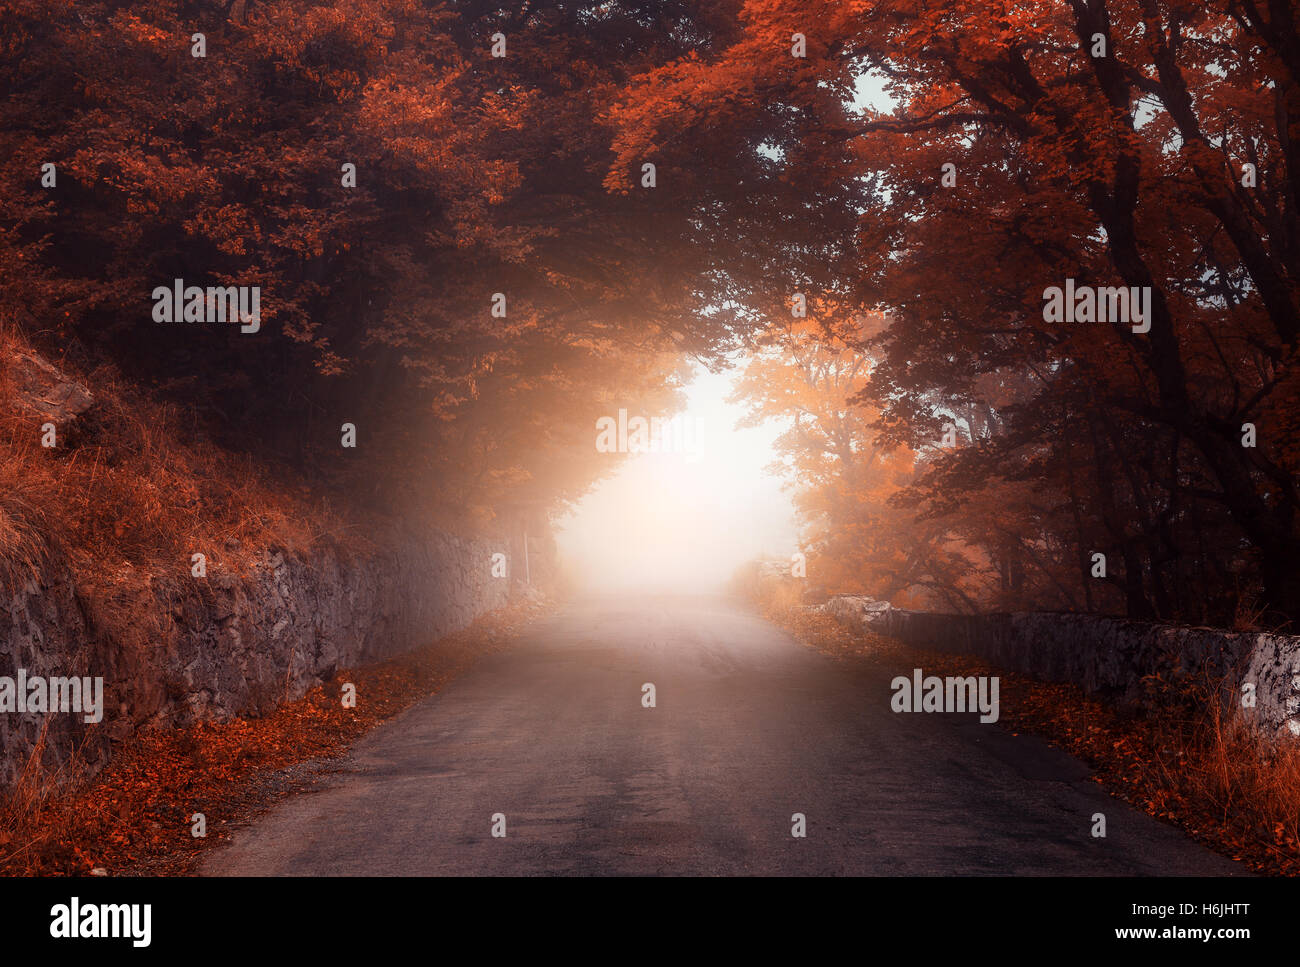 Automne forêt mystique avec road dans le brouillard. Misty automne bois. Paysage avec des arbres colorés, chemin rural, feuillage orange et rouge Banque D'Images